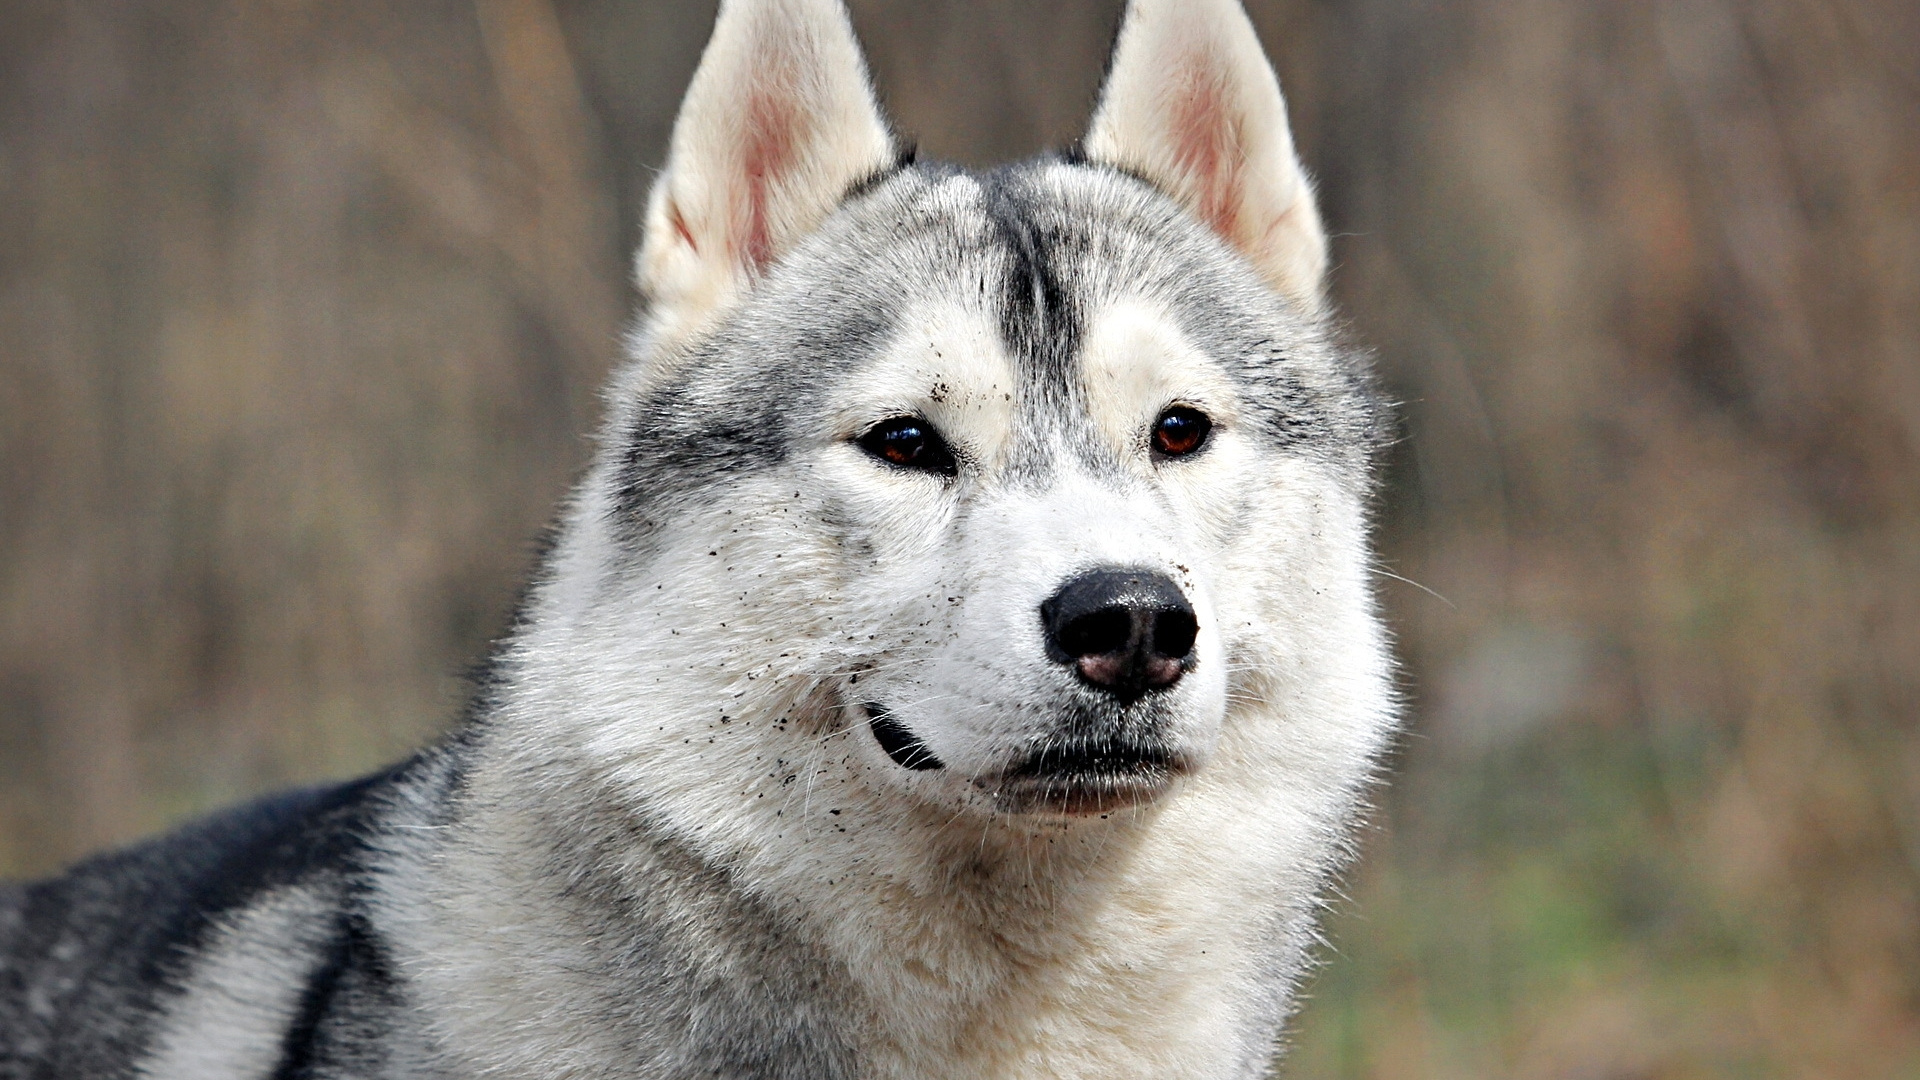 阿拉斯加雪橇犬, 小狗, 品种的狗, 萨哈林赫斯基, Saarloos那只狼狗 壁纸 1920x1080 允许